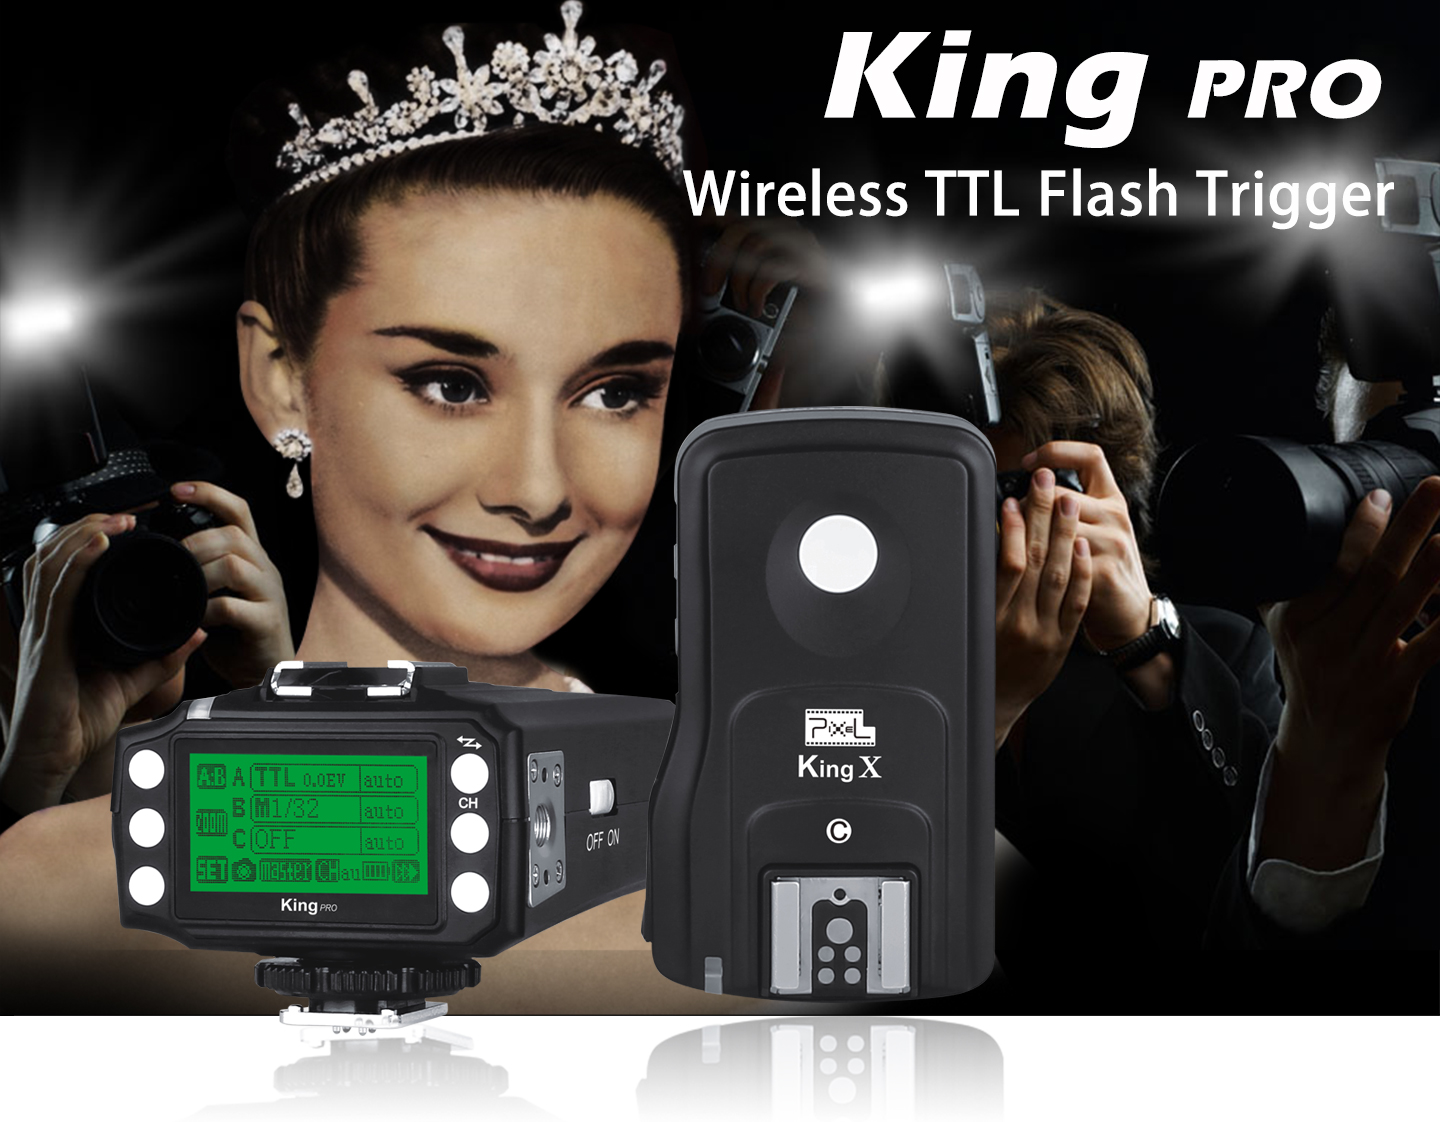 King PRO Wireless TTL Flash Trigger